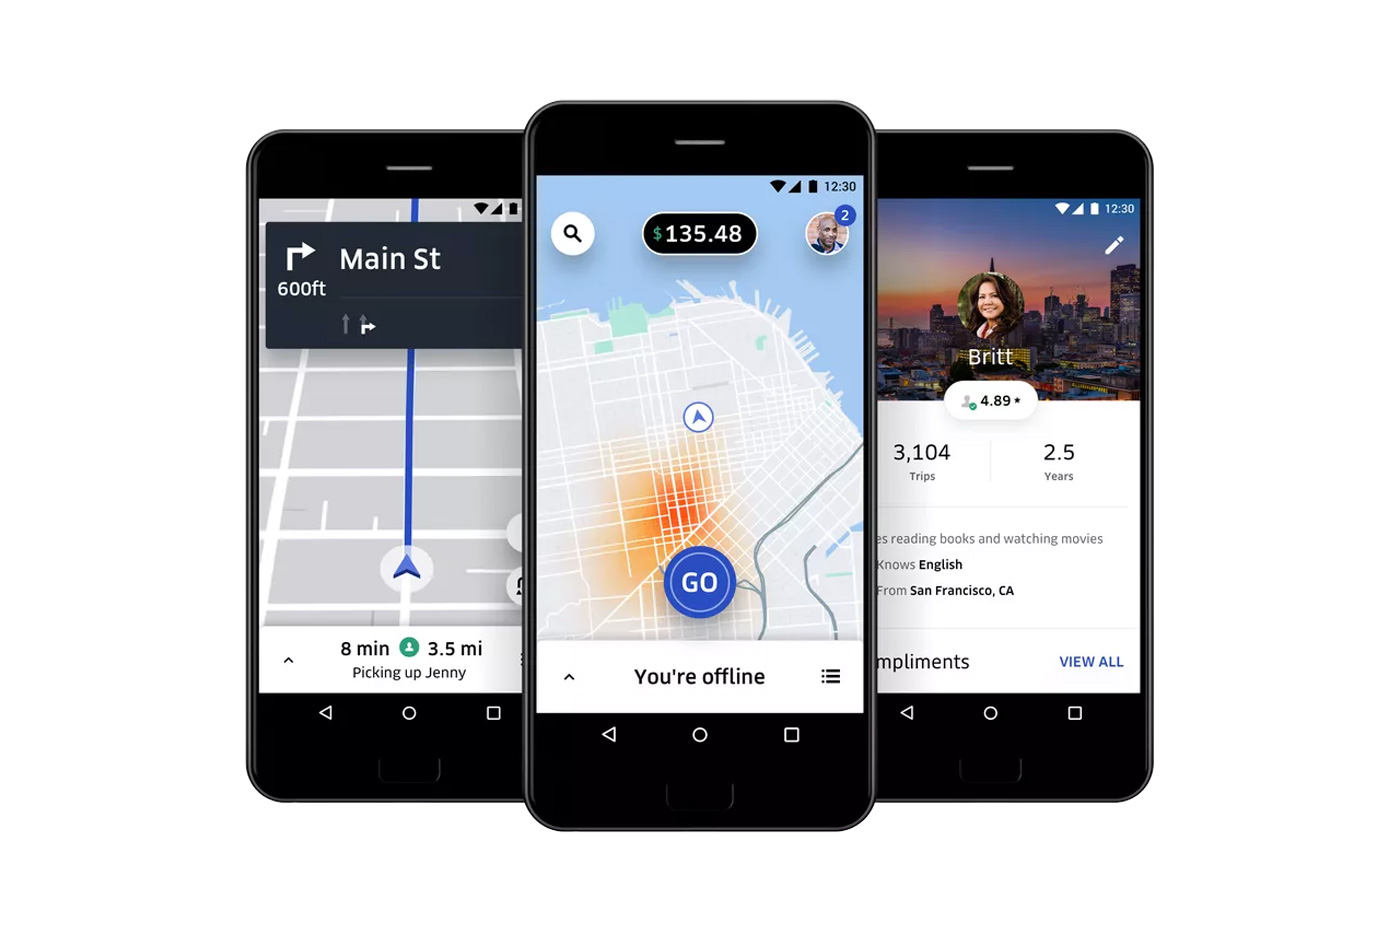 uber-driver-app-screens-6